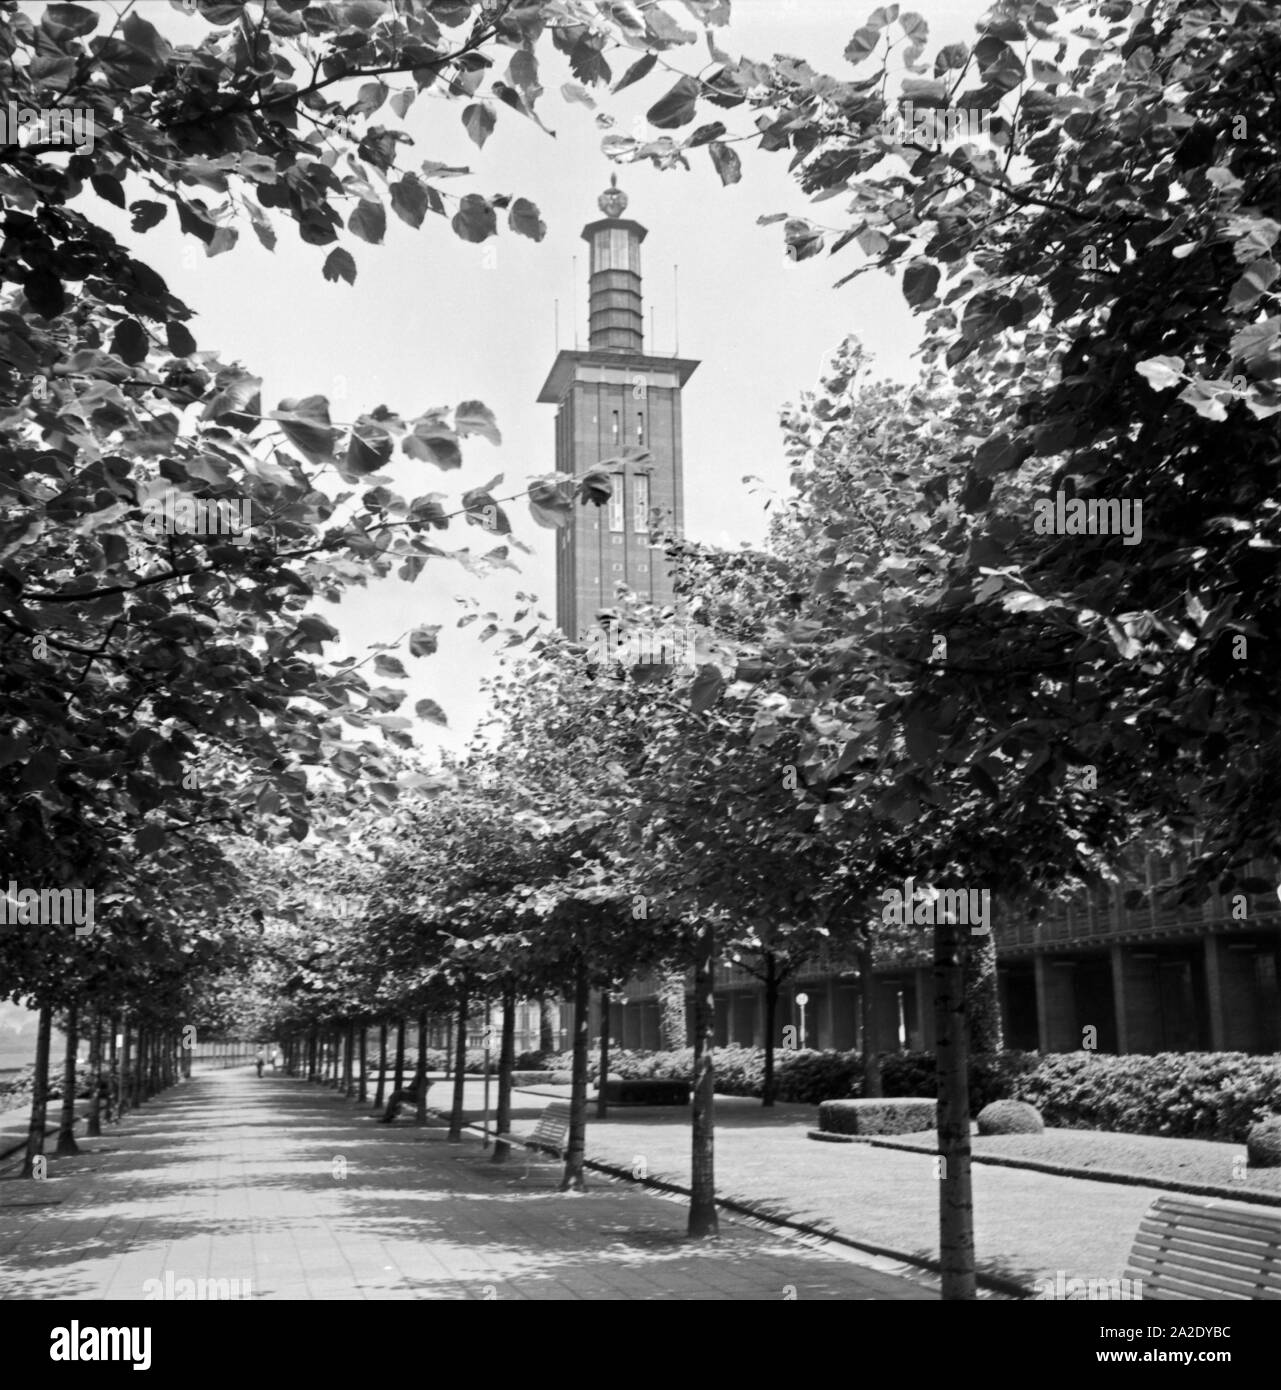 Rheinufer mit Messehallen und Messeturm in Köln Deutz, 1930er Jahre. Shore of river Rhine with Cologne fair buildings and tower, 1930s. Stock Photo